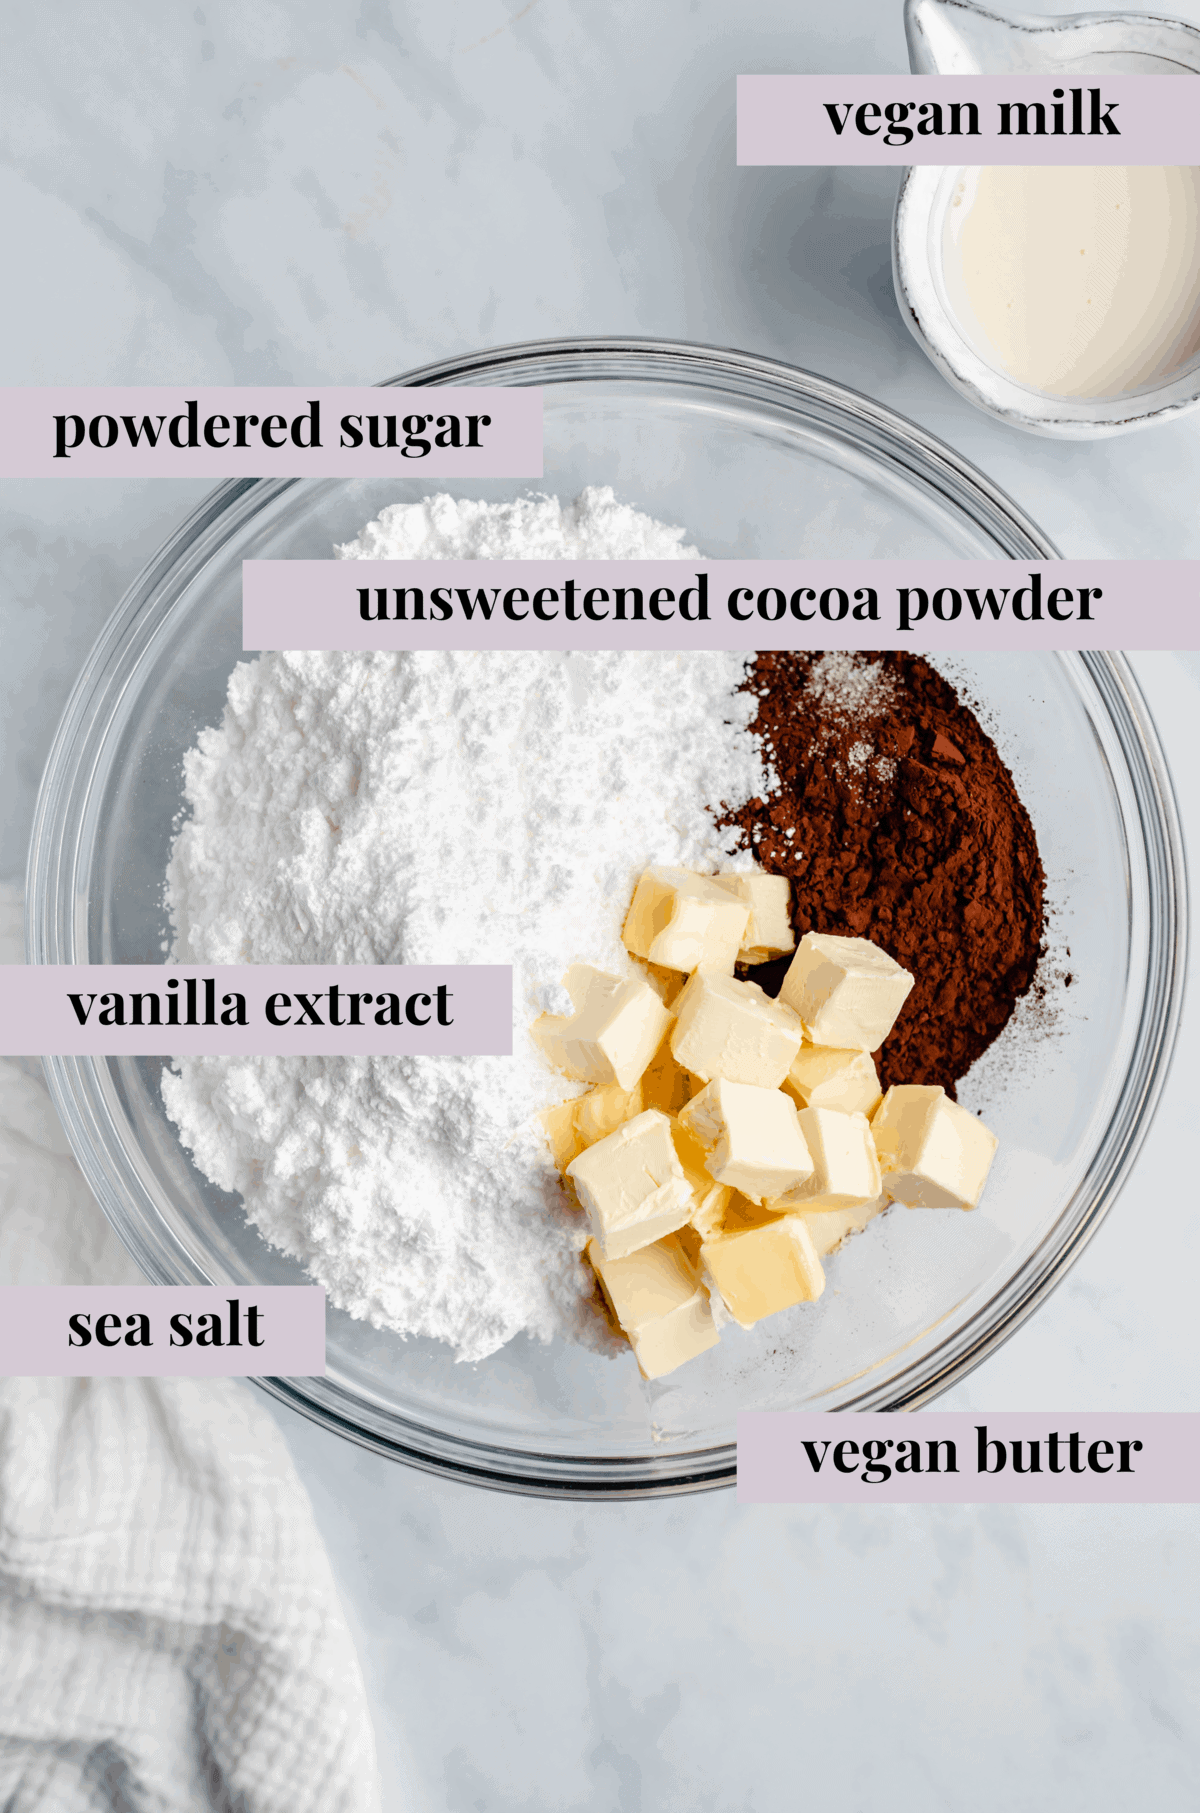 Ingredients for vegan chocolate sheet cake.